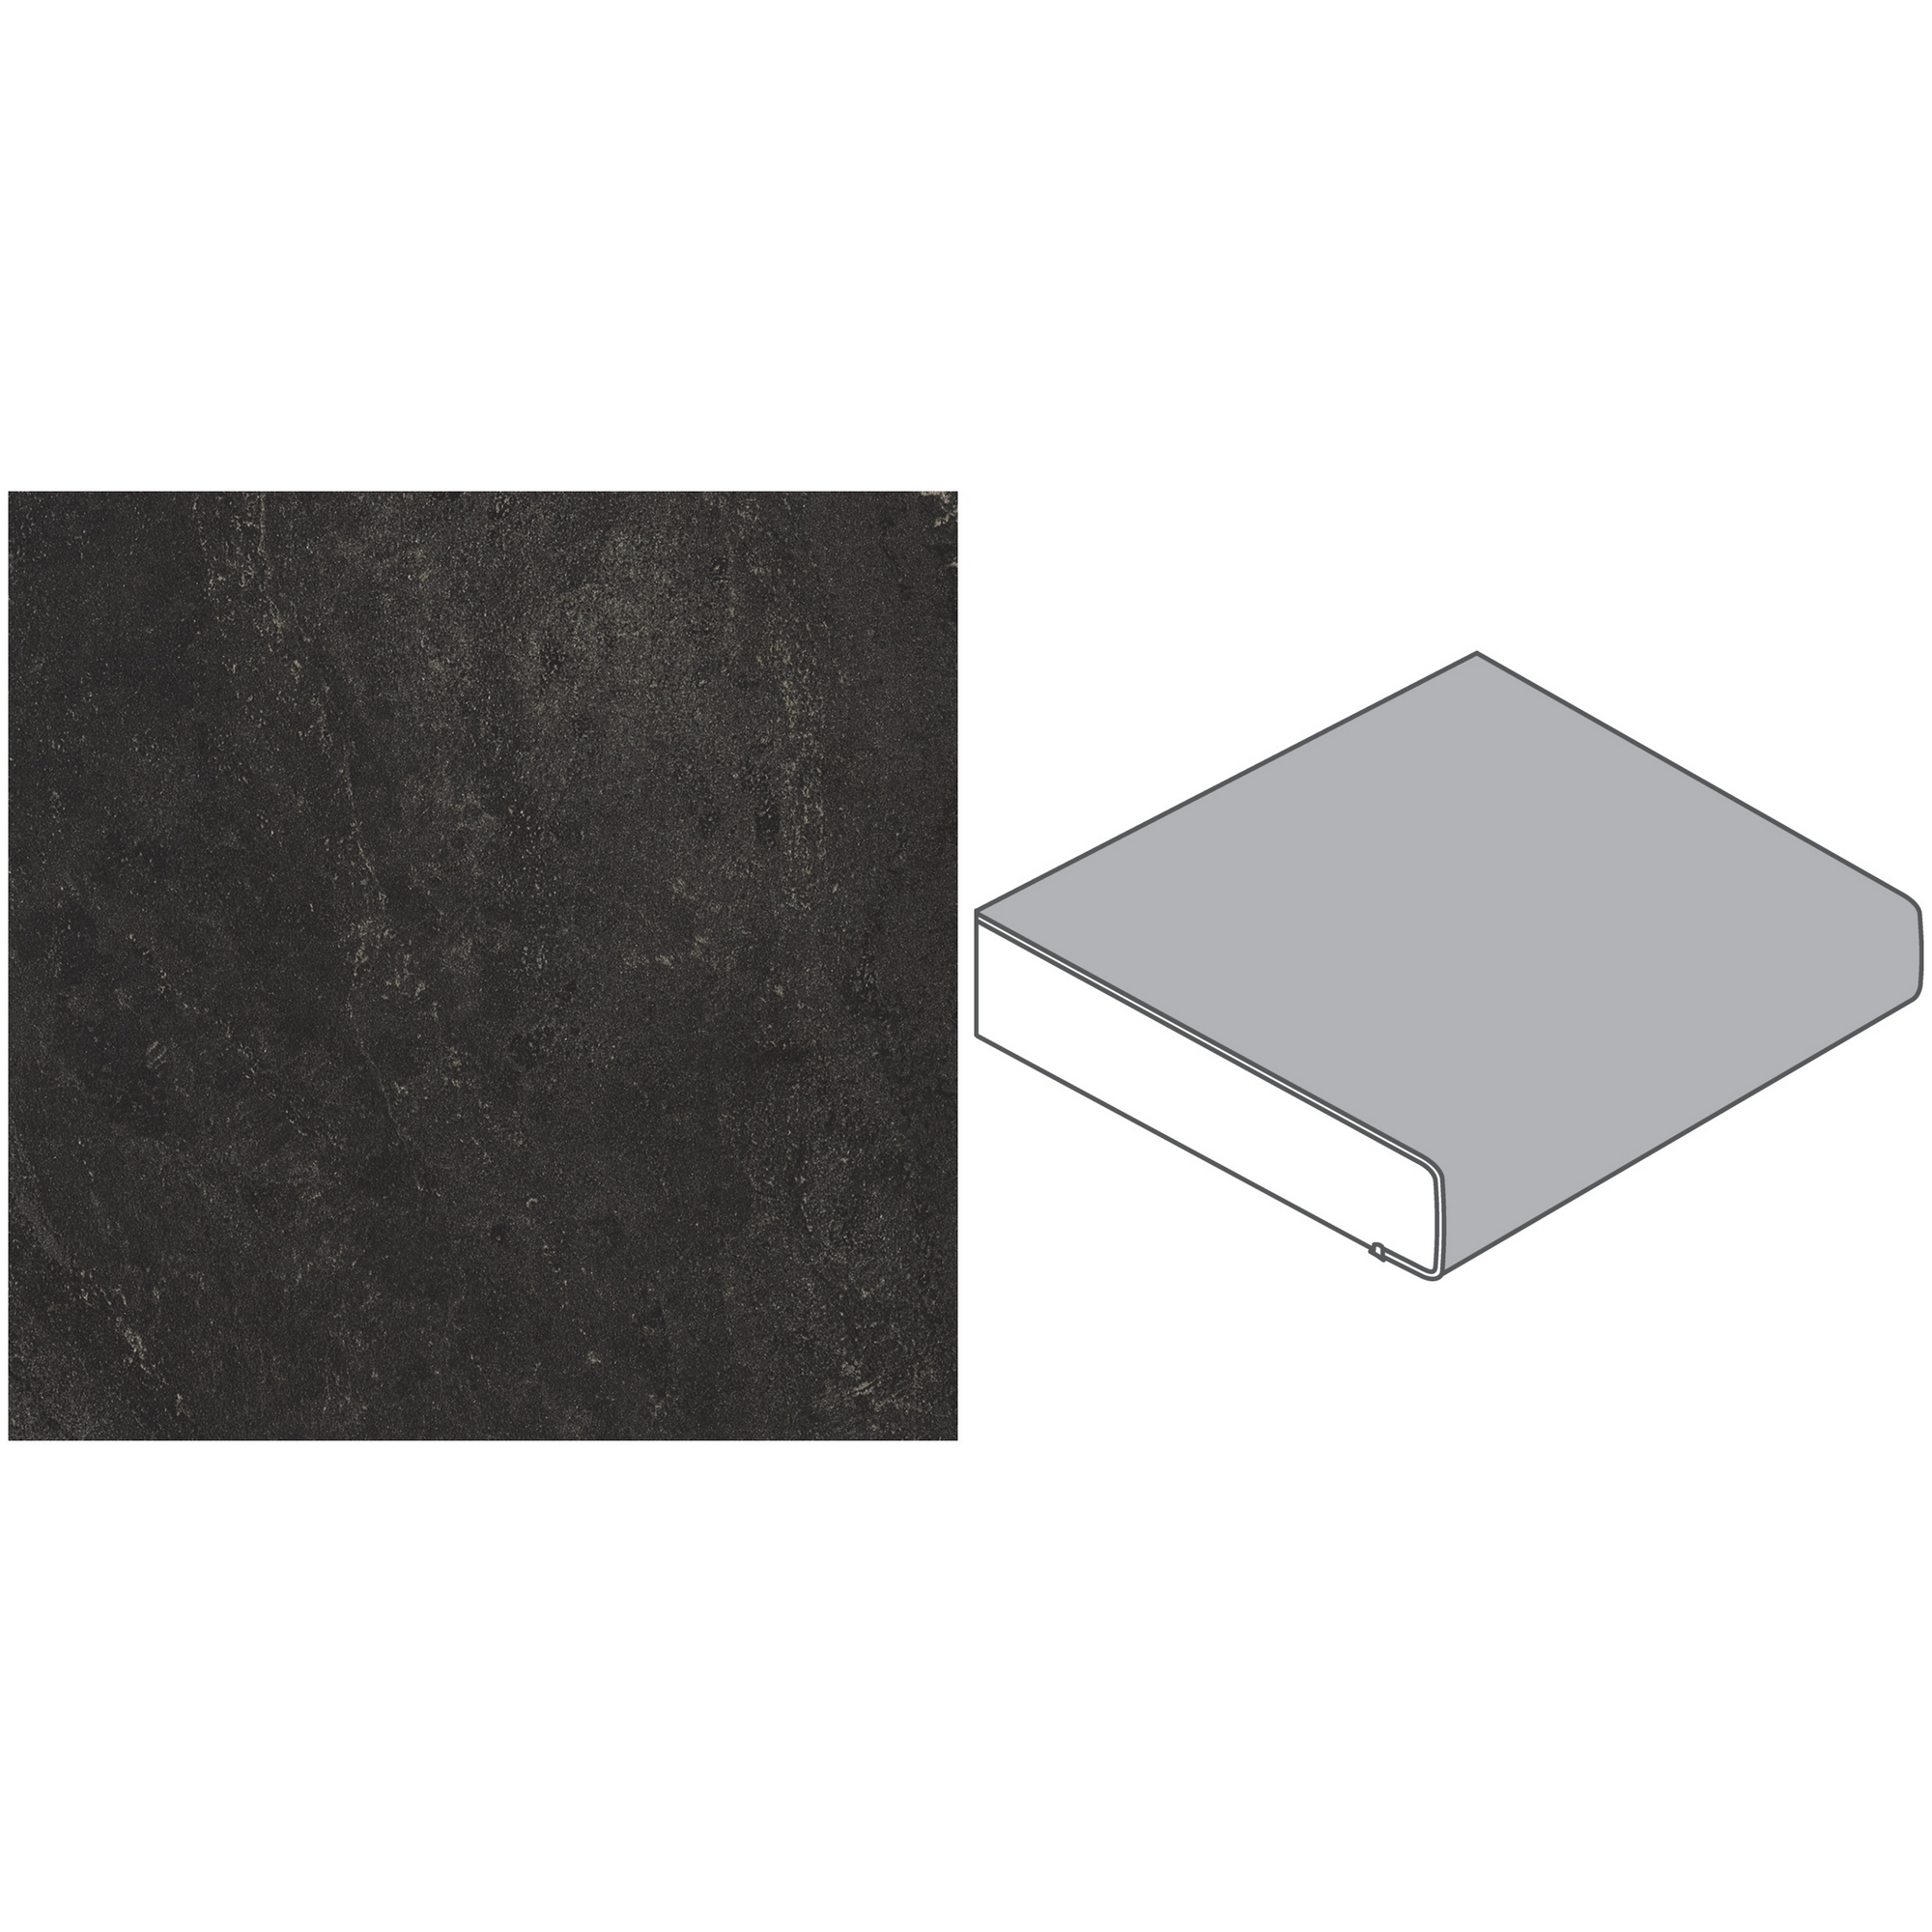 Küchenarbeitsplatte Spanplatte Bronzit schwarz 305 x 60 x 3,9 cm + product picture